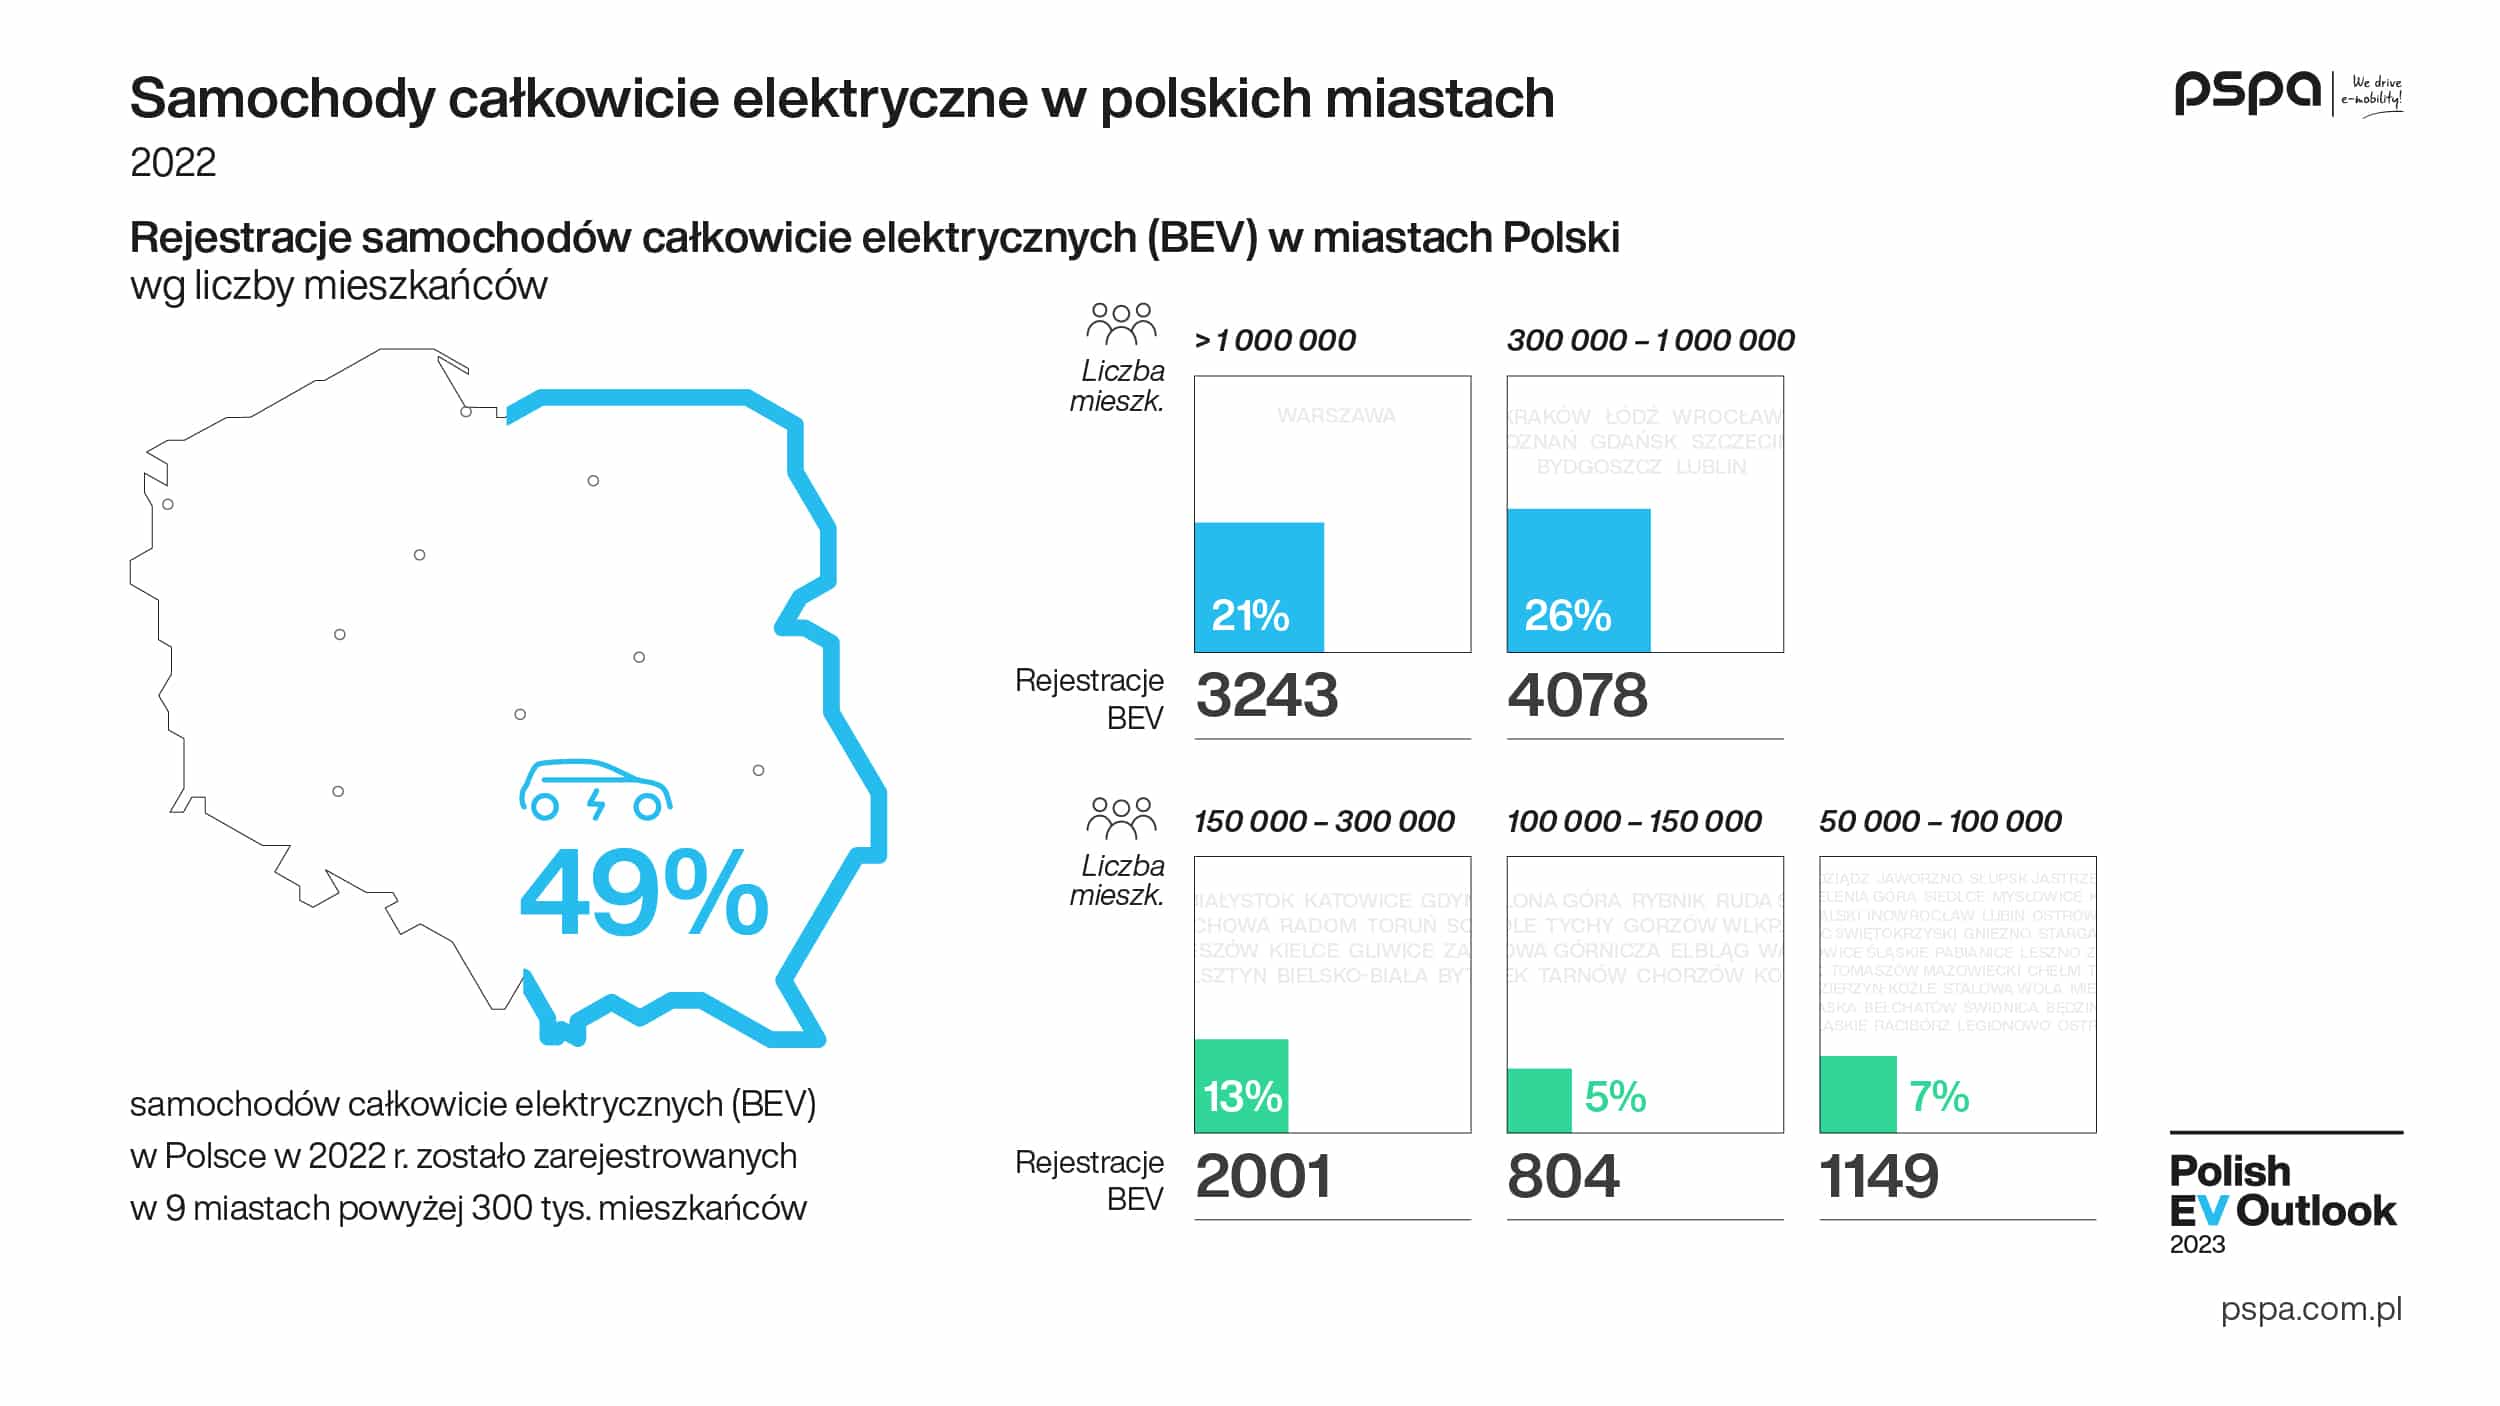 Polish_EV_Outlook_2023_wyd_I_komunikat_grafika_pojazdy_04